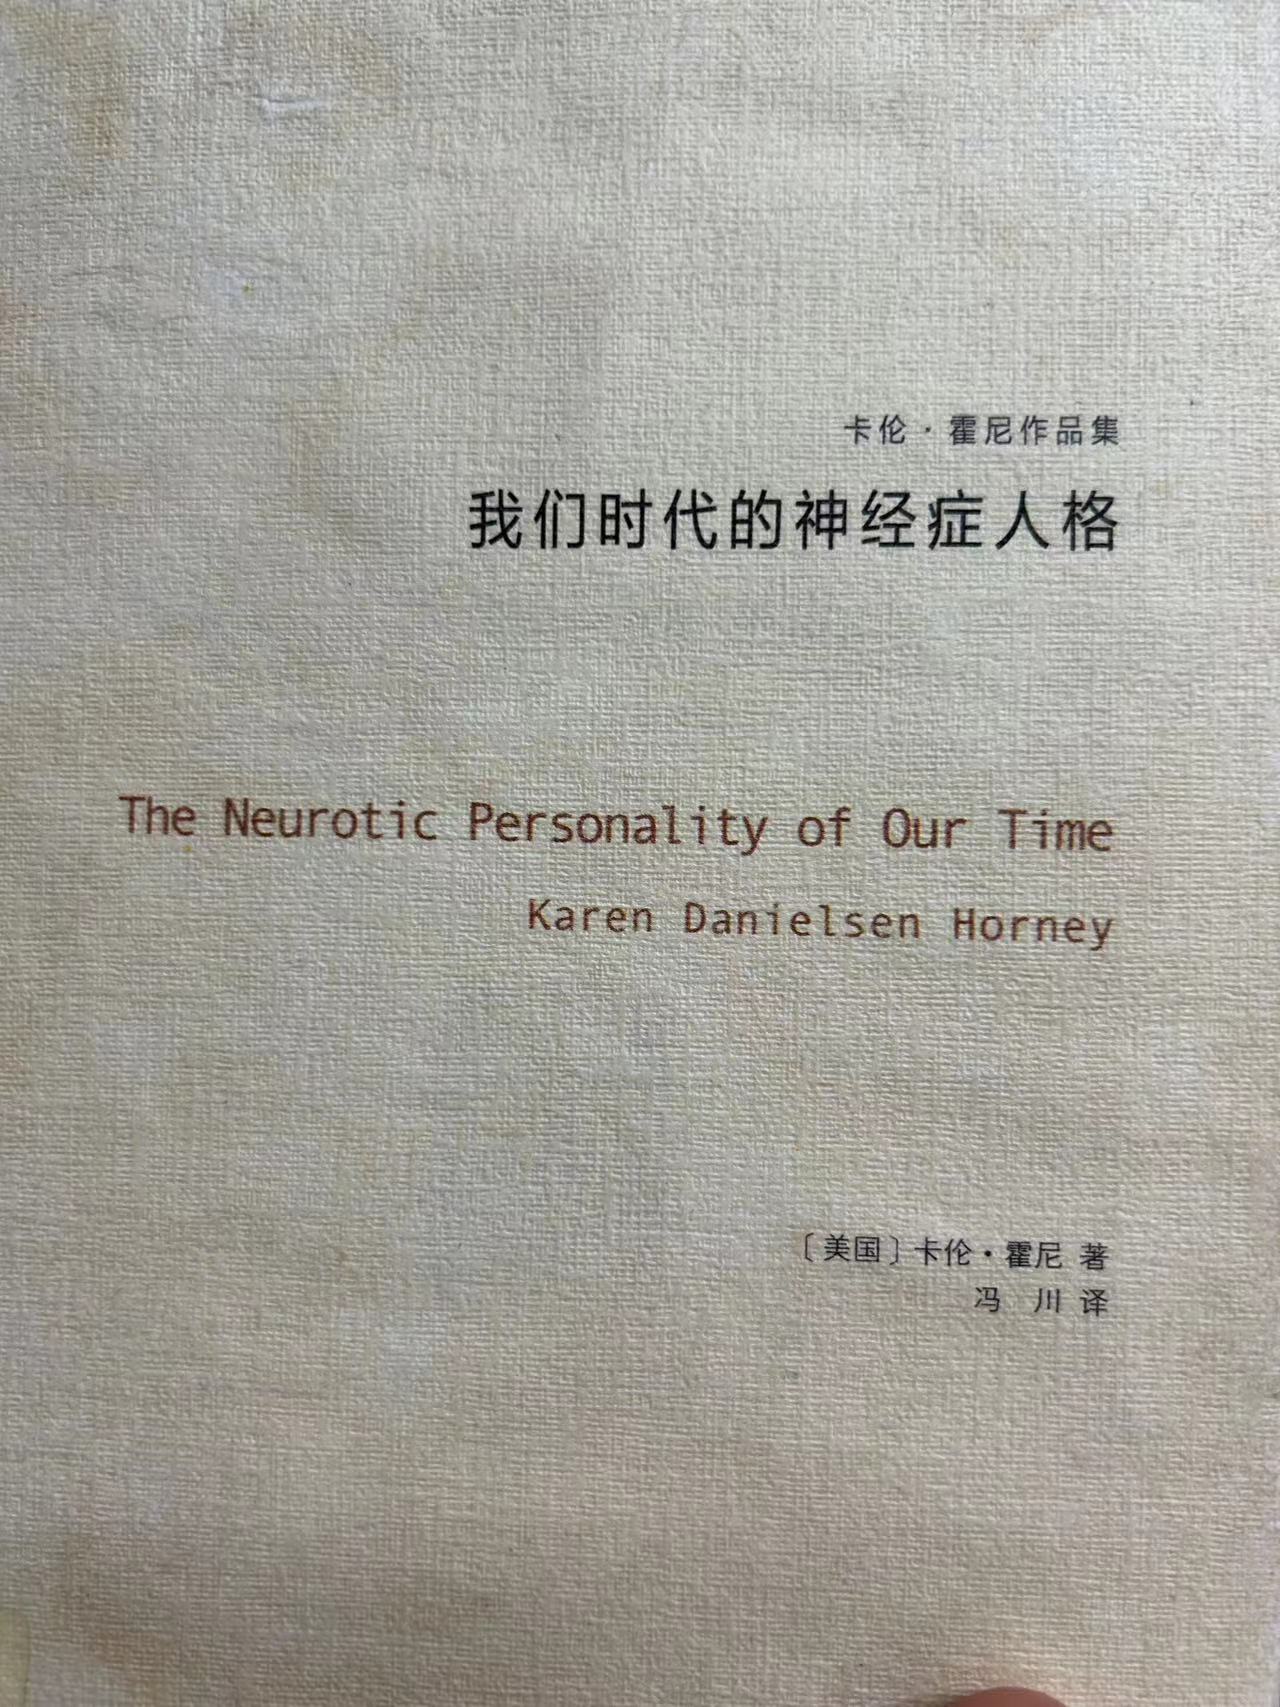 讀書筆記一「我們時代的神經症人格」